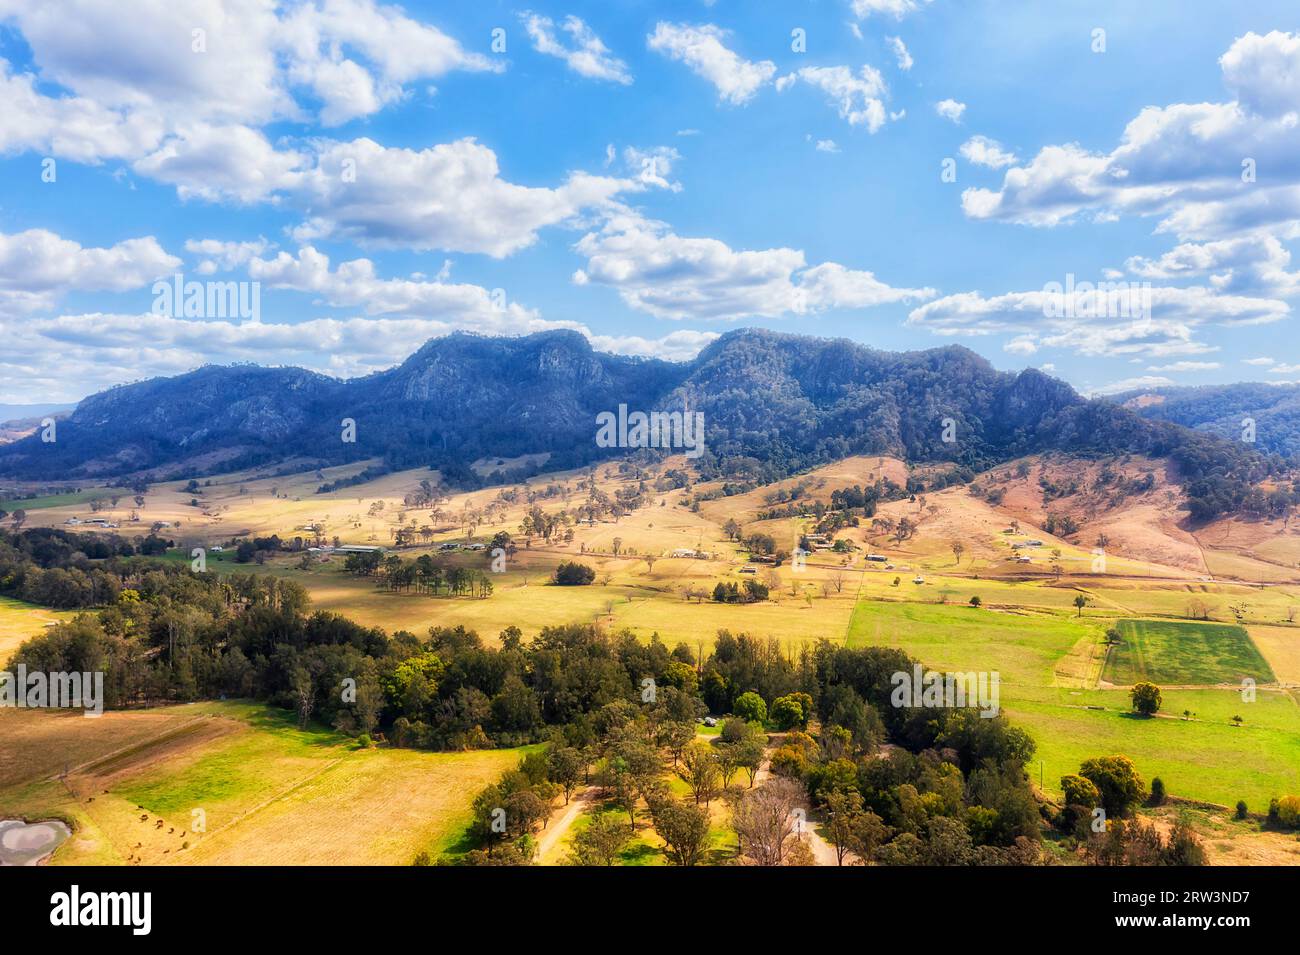 Grüne Weiden von Viehfarmen in Gloucester Stadt in Barrington Tops Berge in Australien - Luftlandschaft. Stockfoto